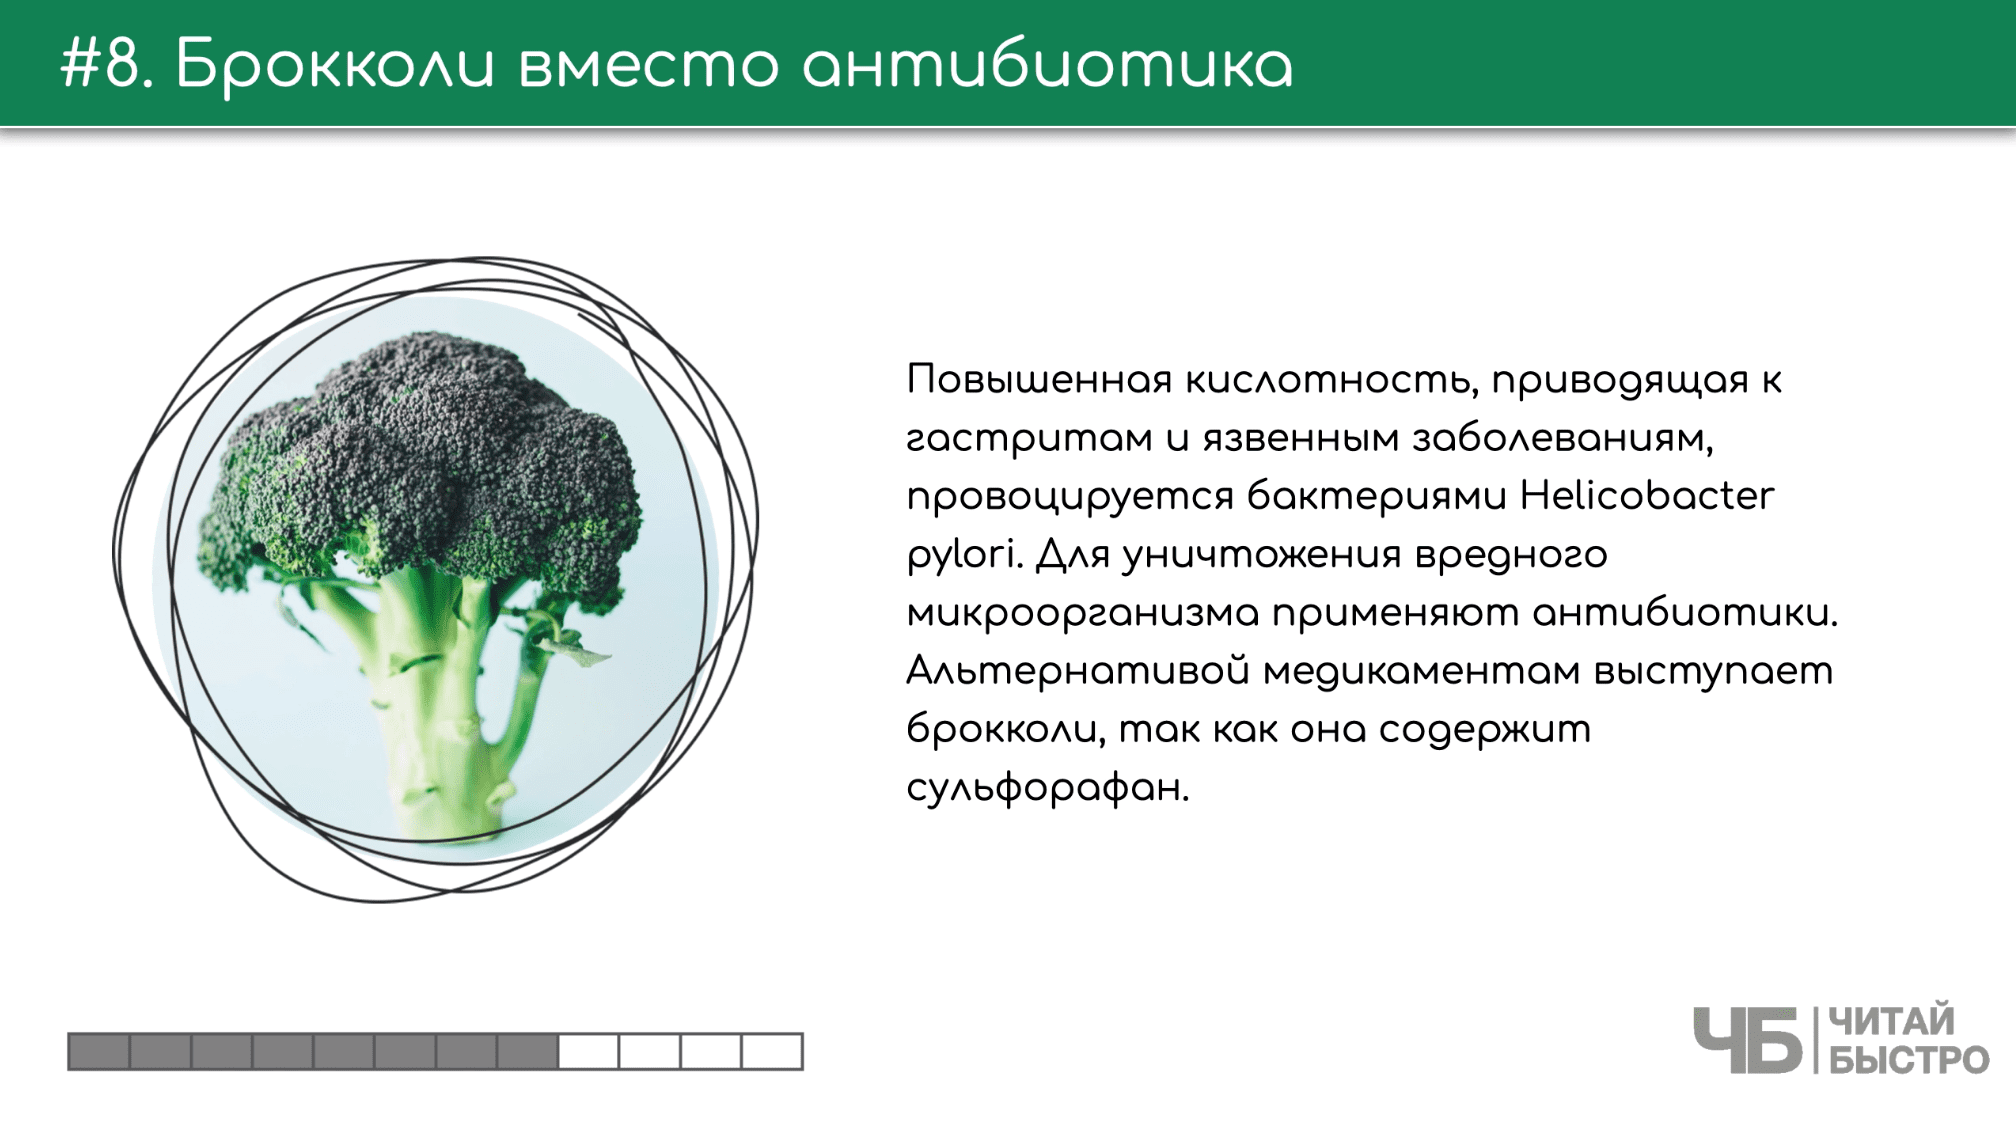 Удивительный овощ брокколи, который может победить бактерию Хеликобактер пилари.